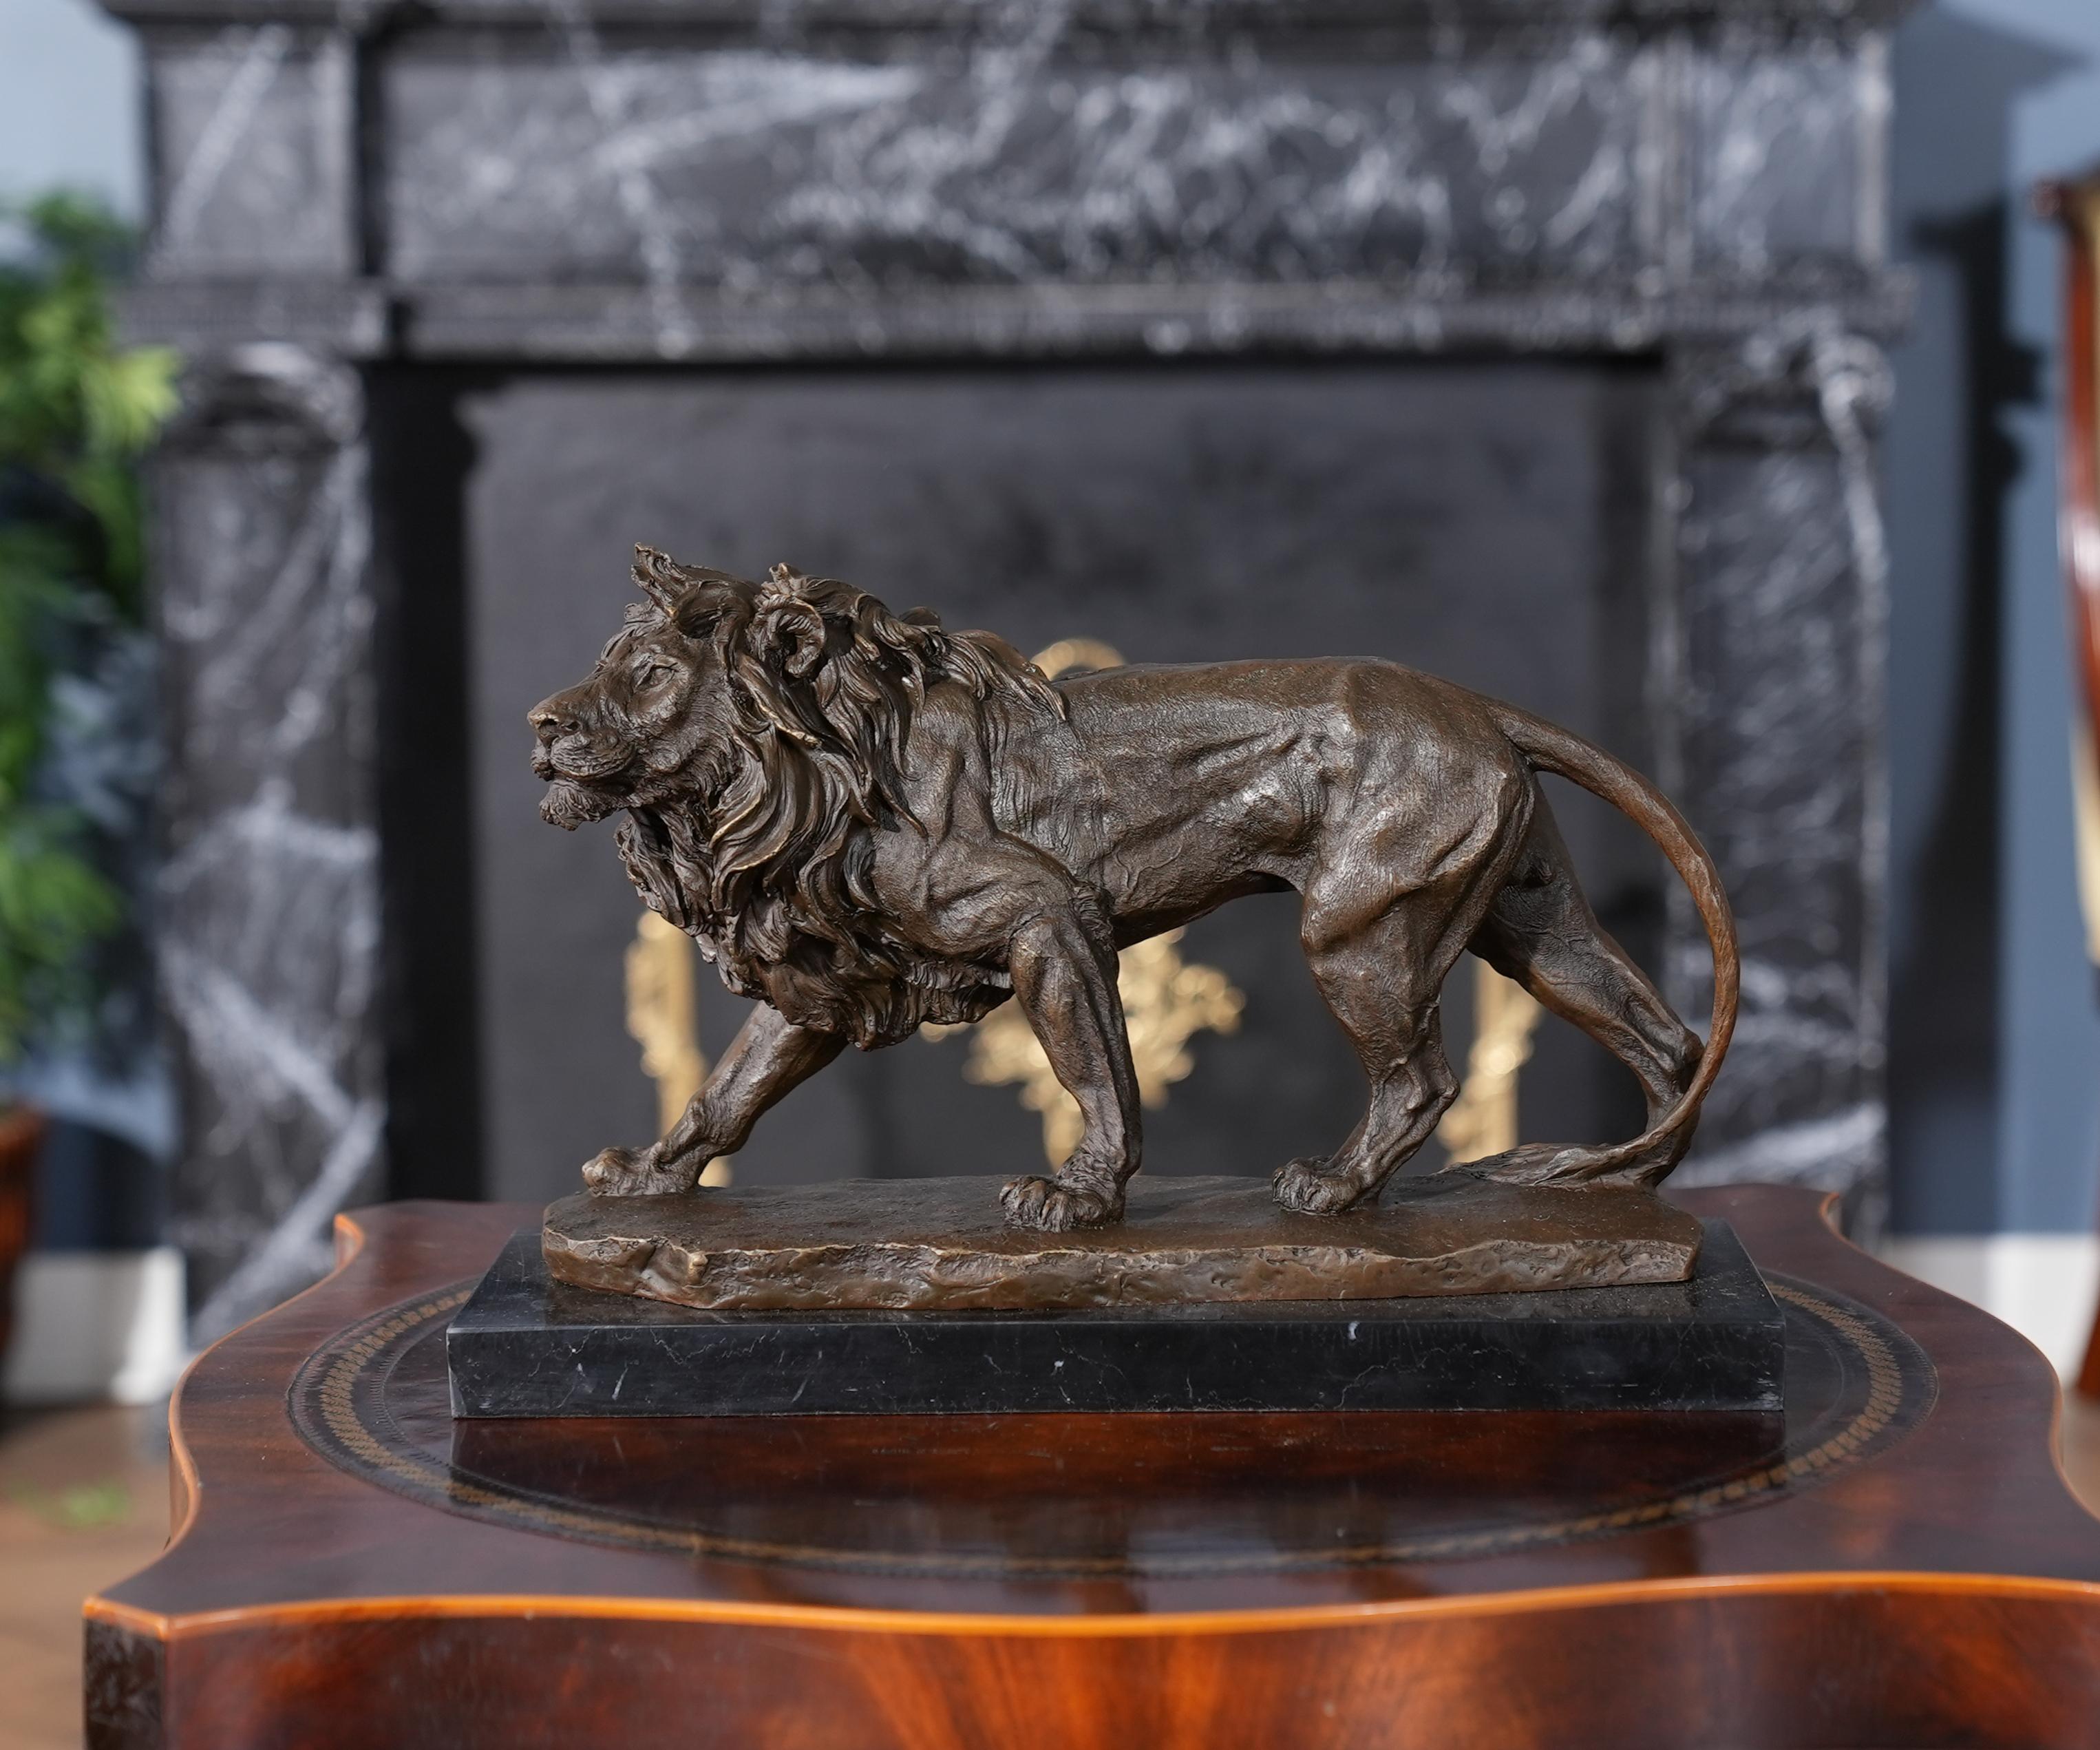 Gracieux même lorsqu'il est immobile, le lion en bronze avec socle en marbre est un ajout saisissant à tout décor. Utilisant les méthodes traditionnelles de moulage à la cire perdue, la statue du lion de taureau est créée en pièces détachées, puis